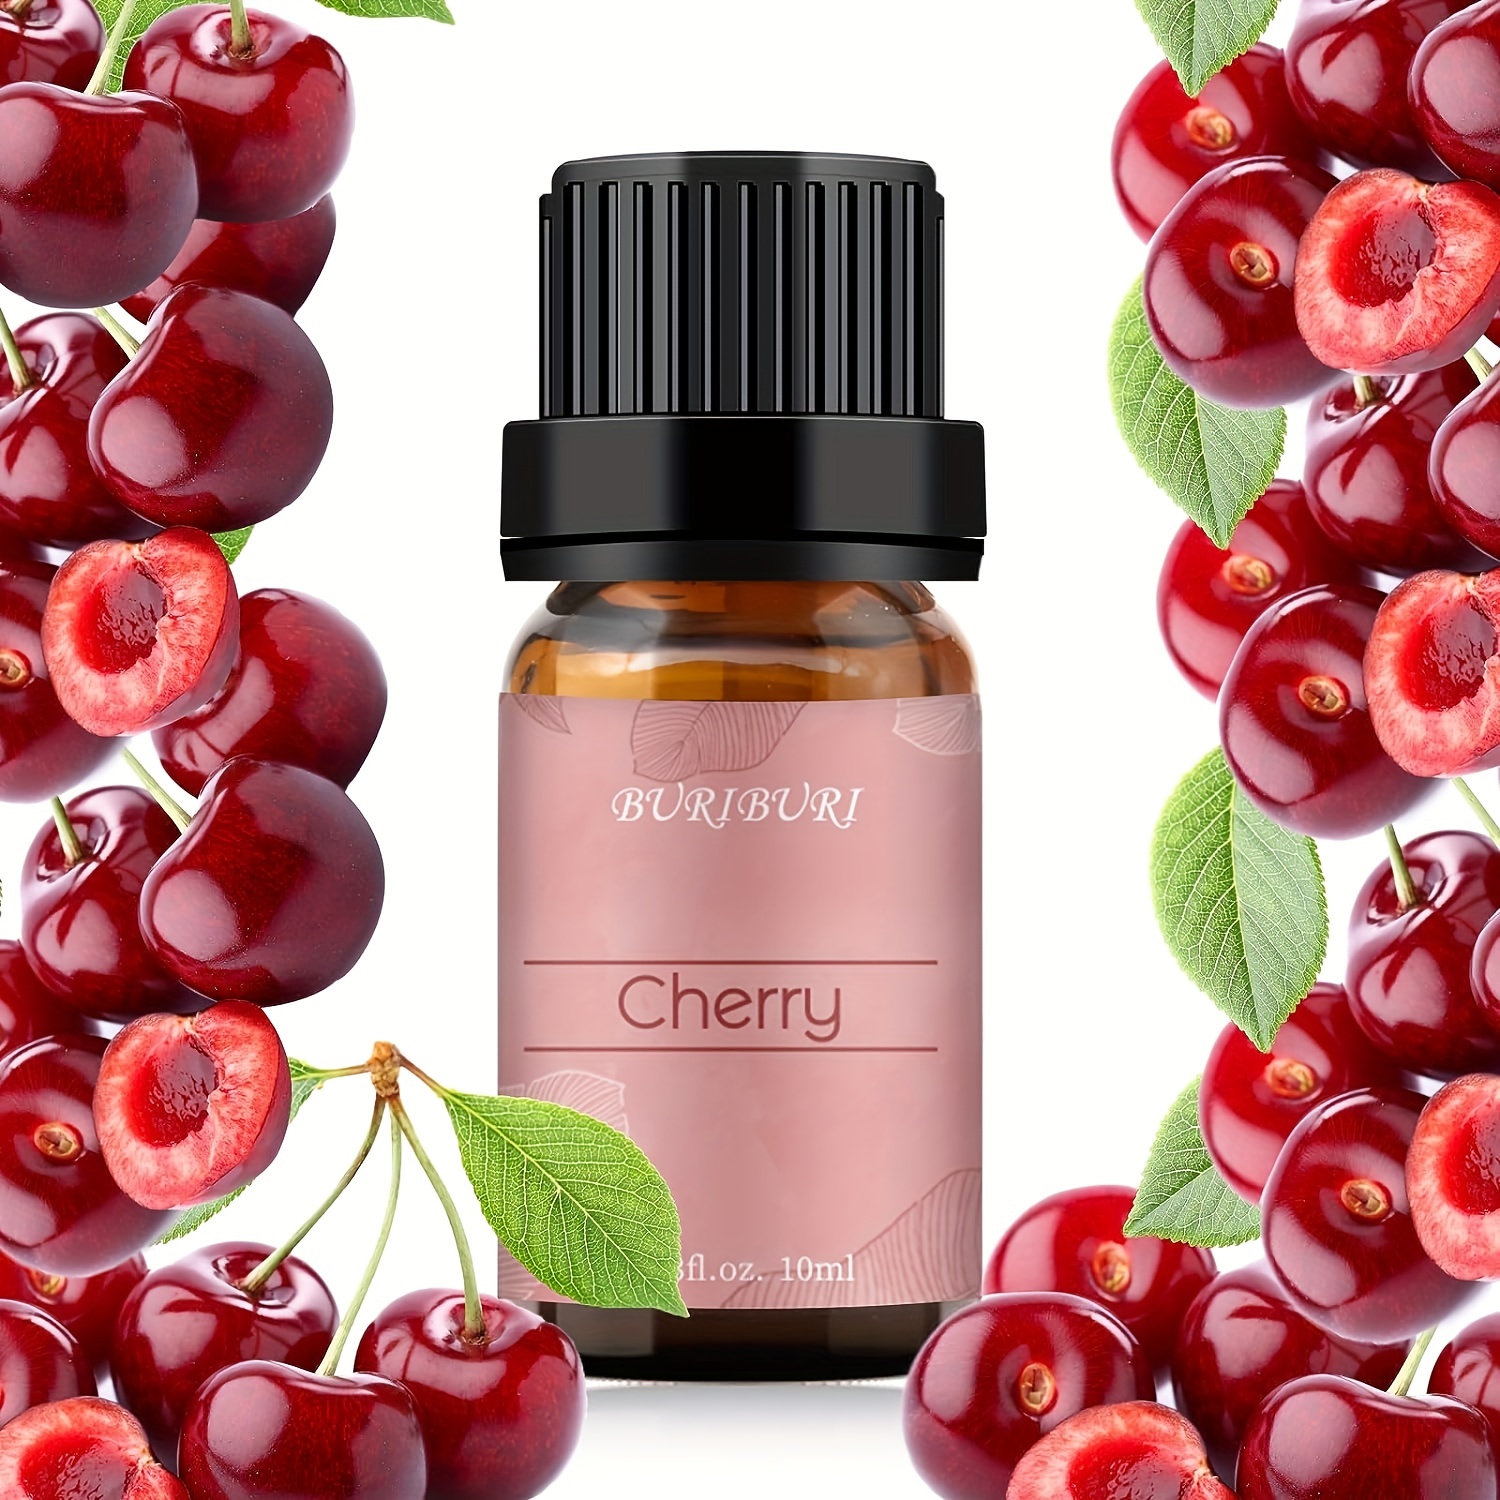 Buriburi Cherry Essential Oil 10 ml (1/3 oz) 100% Pure, Undiluted